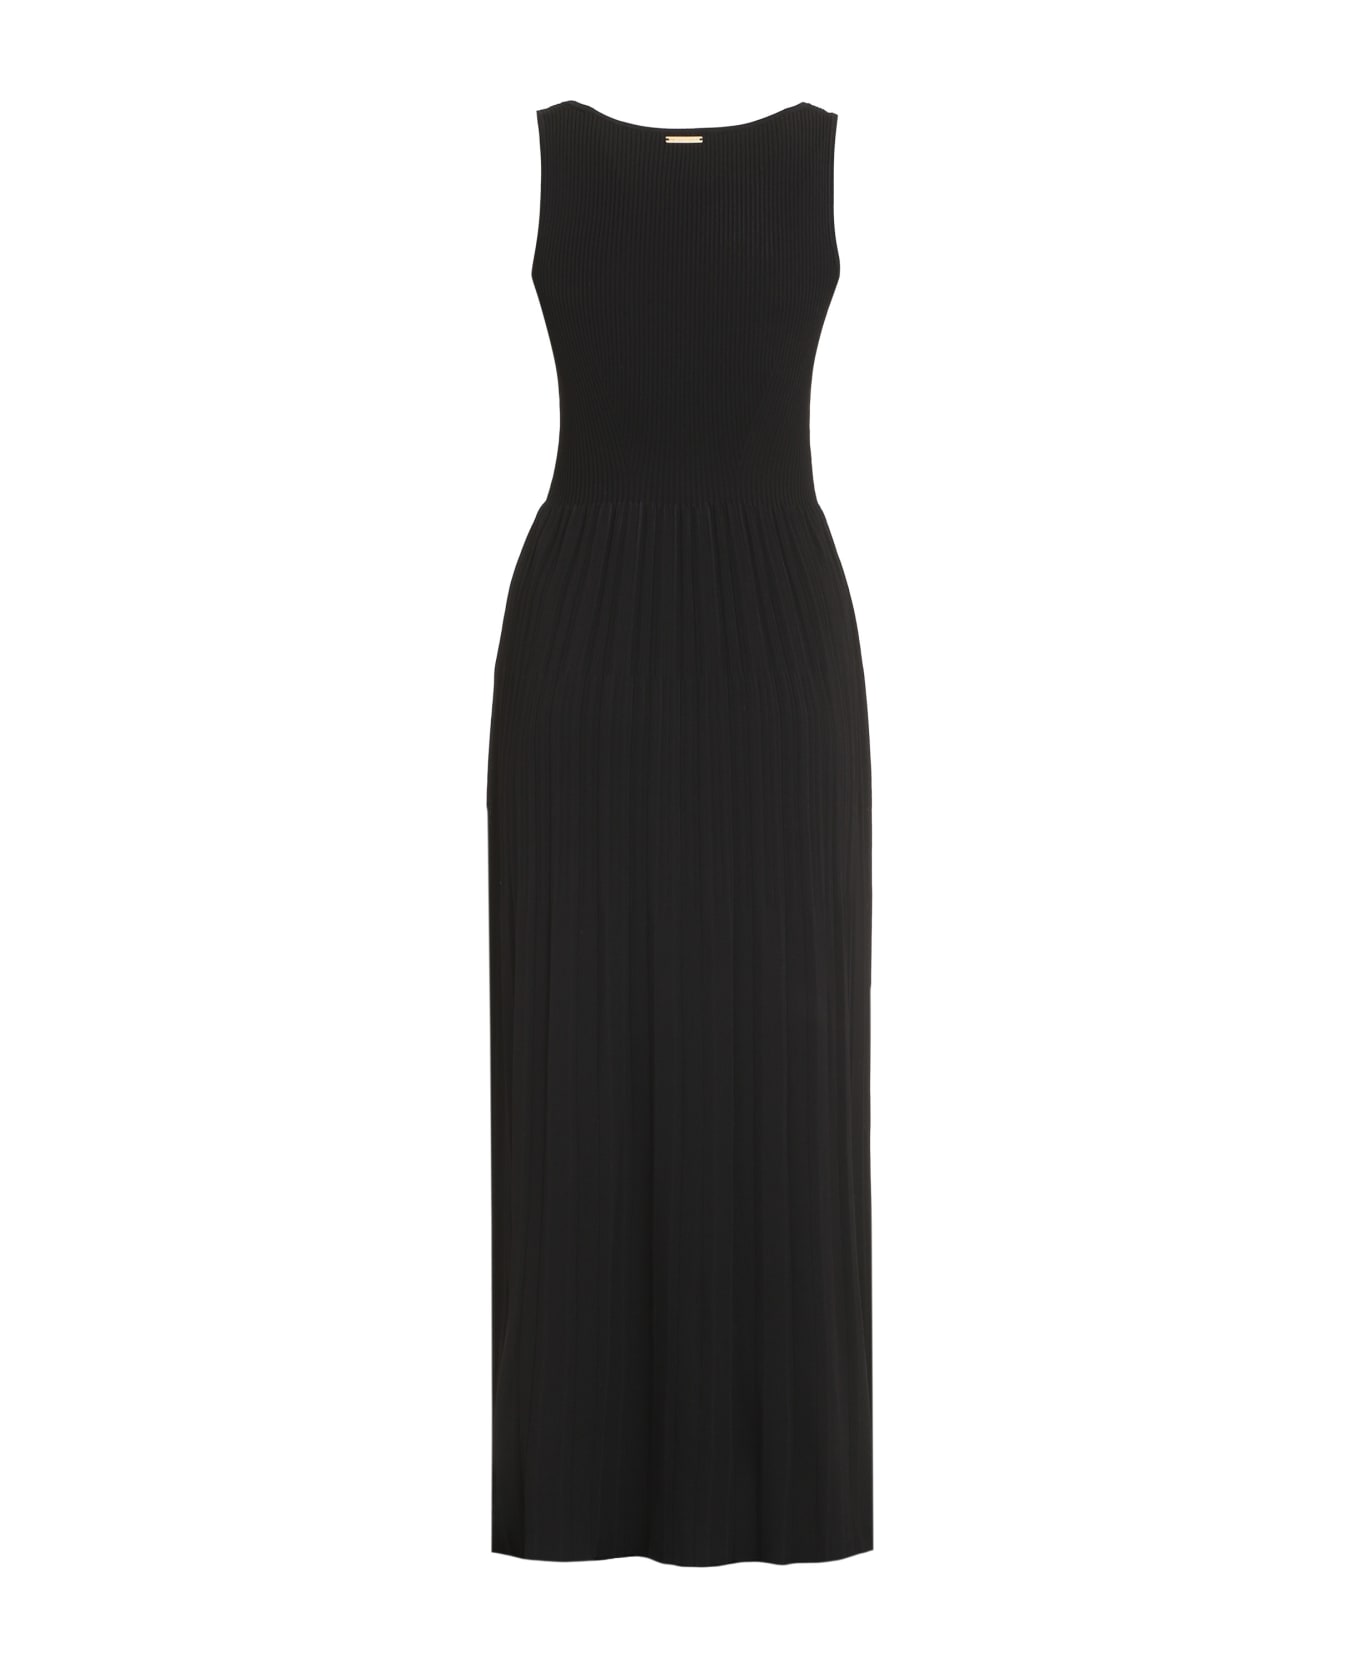 Michael Kors Knitted Long Dress - black